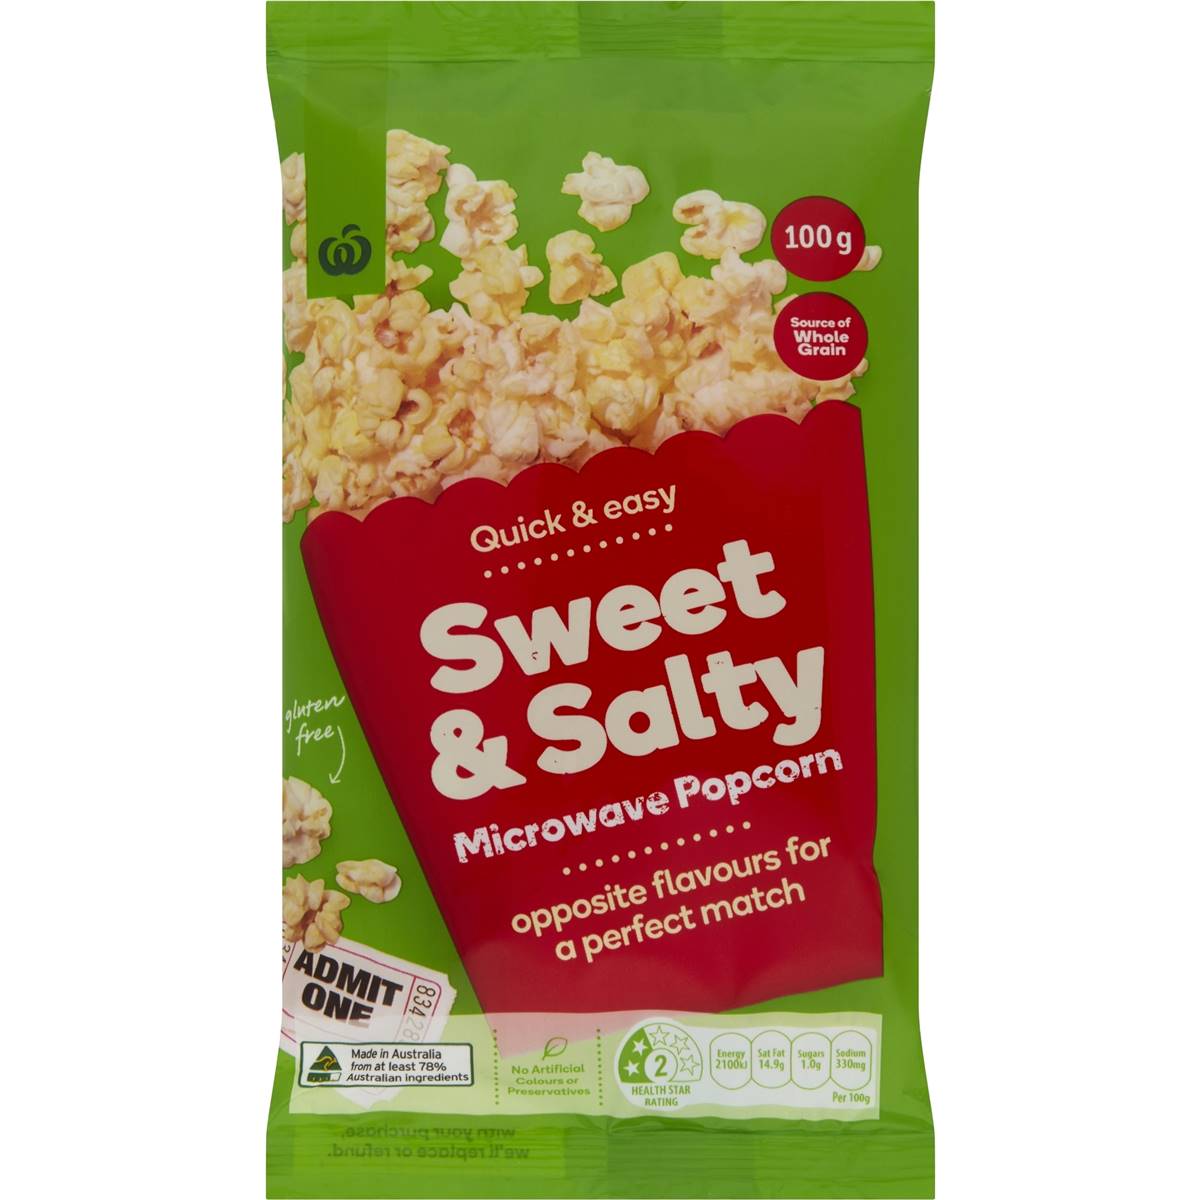 Calories in Woolworths Sweet & Salty Microwave Popcorn